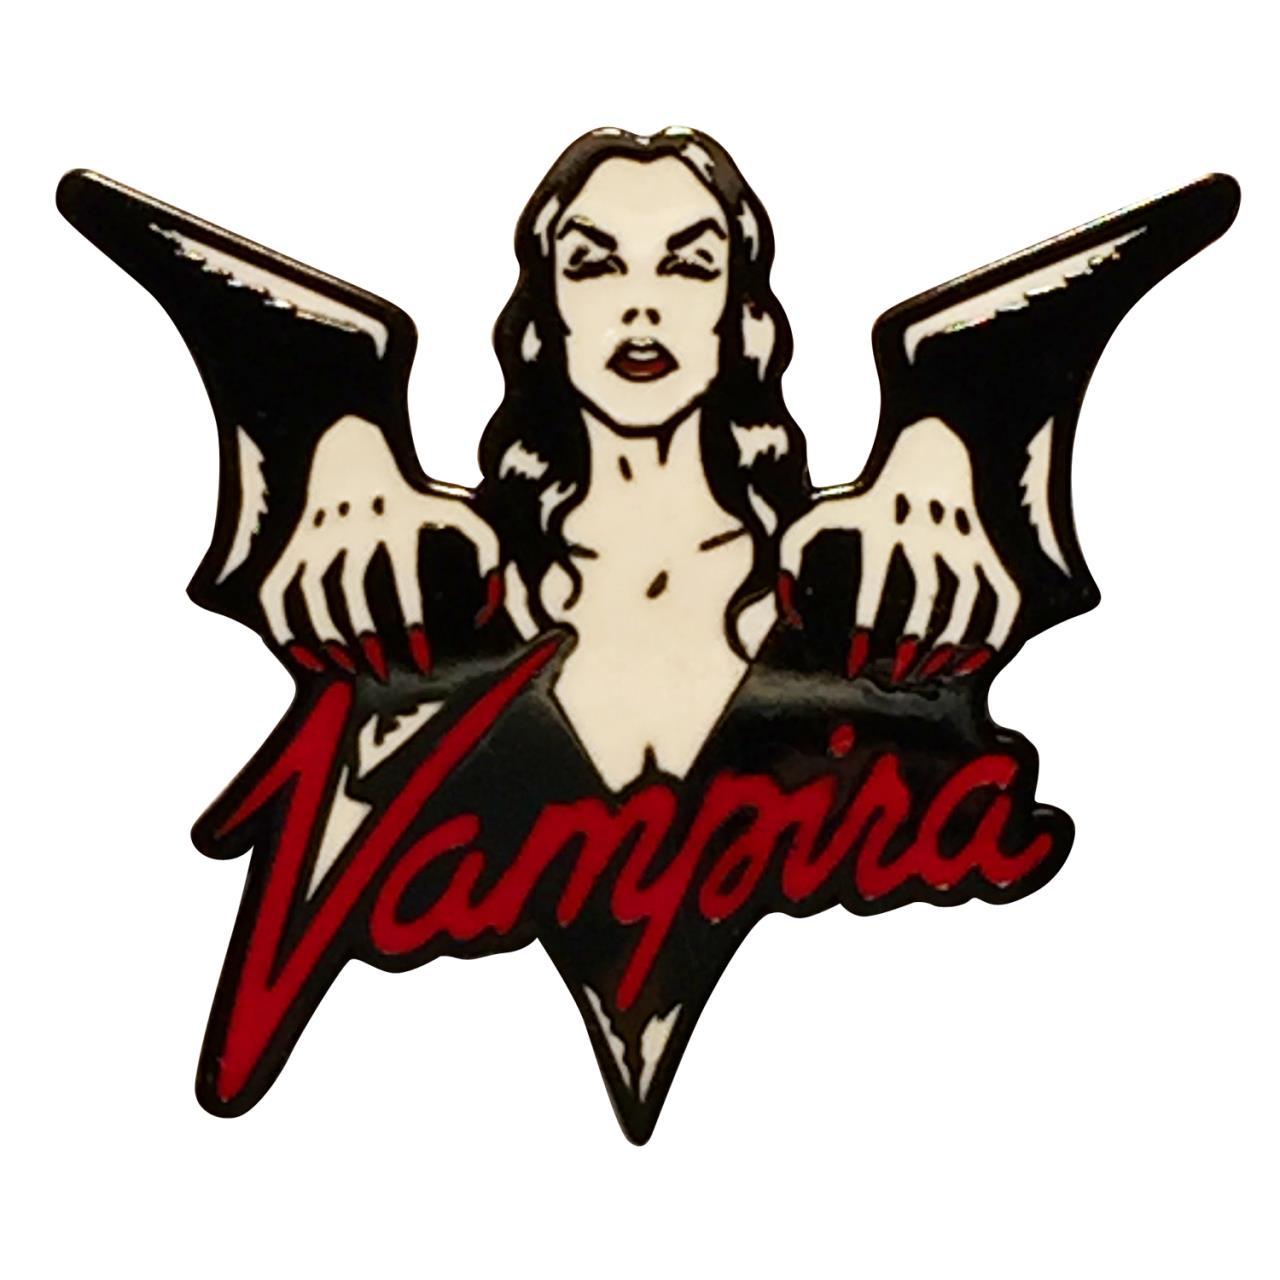 Vampira Logo - Vampira Enamel Pin A Go Go!